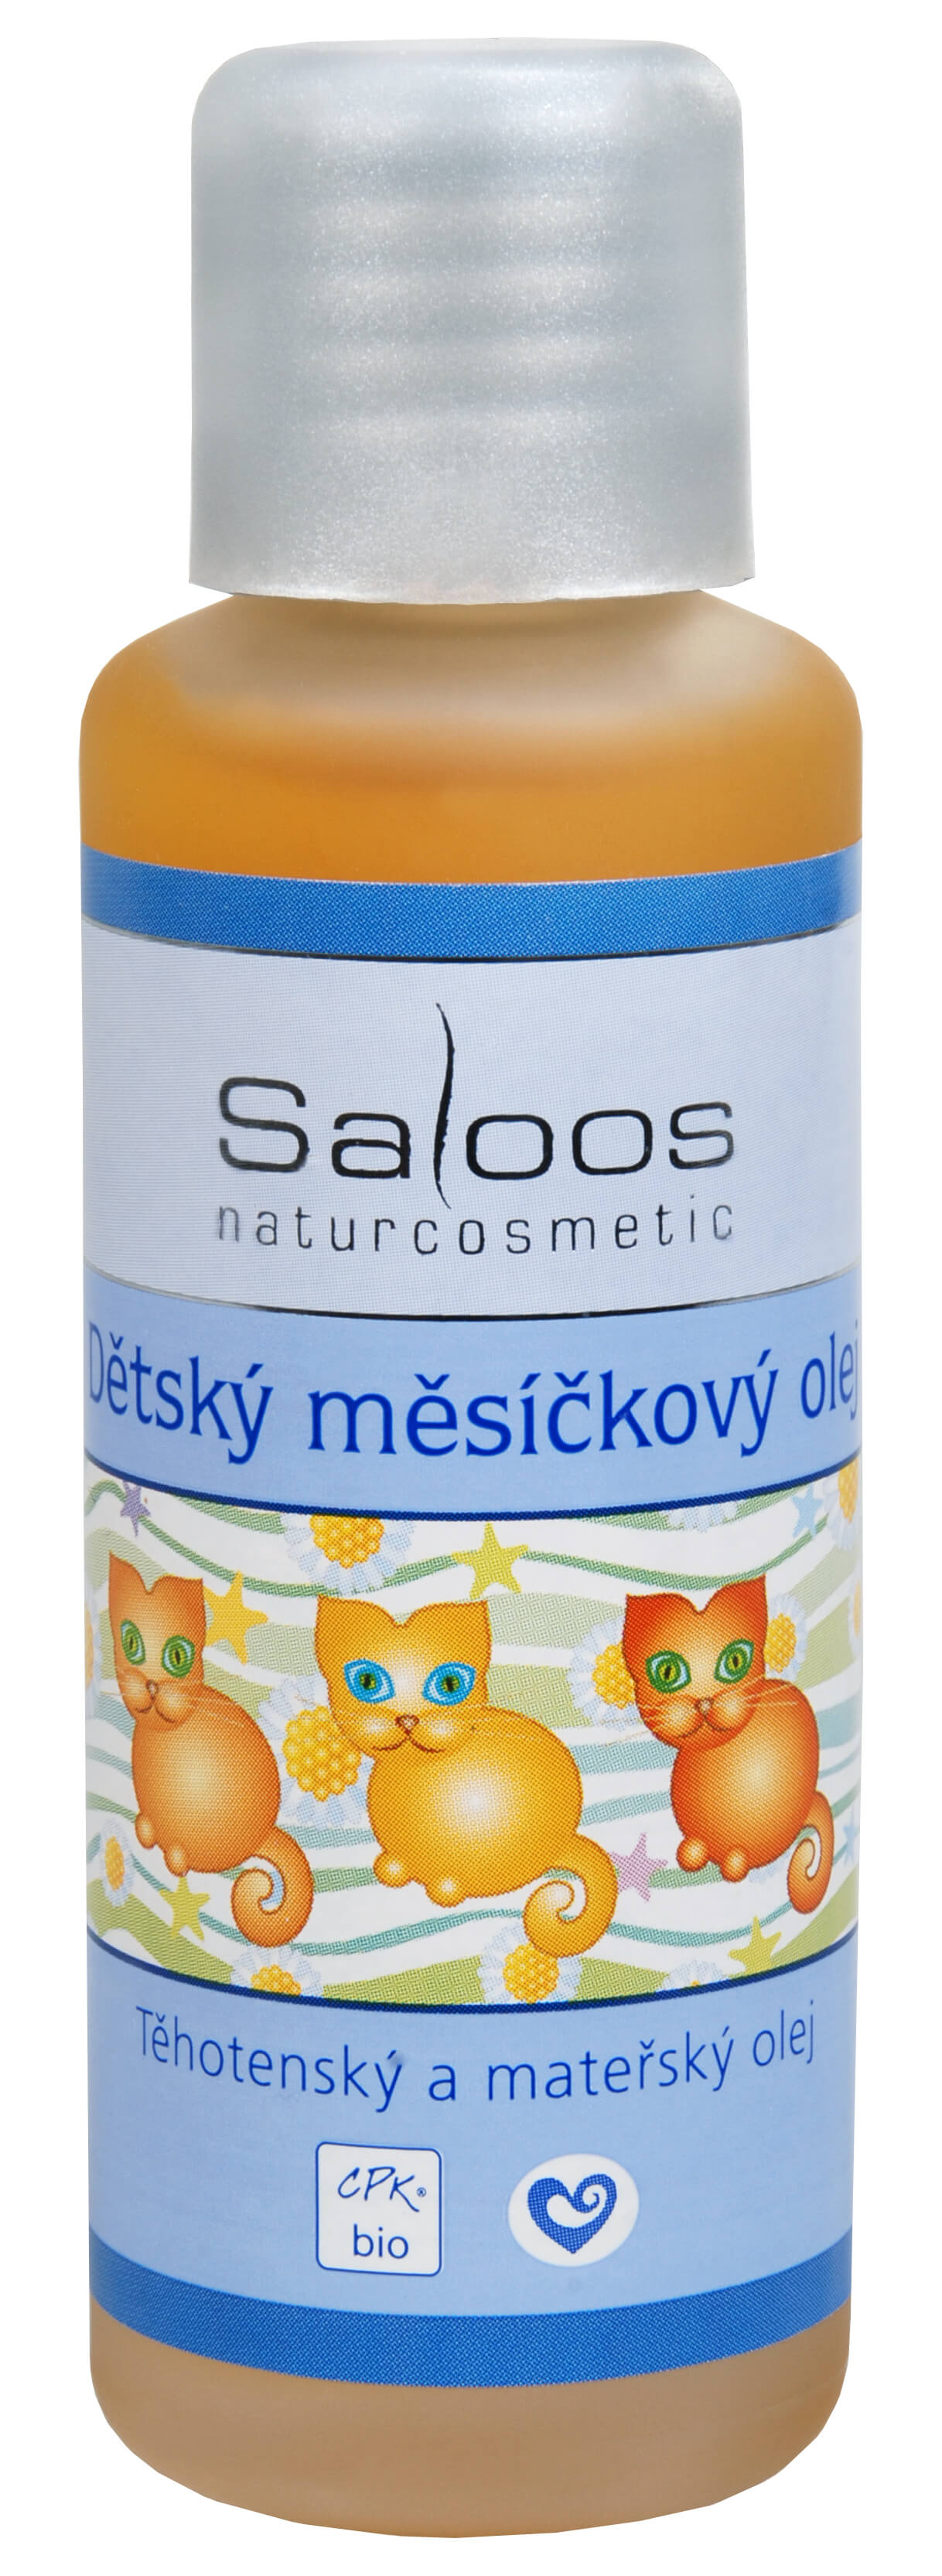 Zobrazit detail výrobku Saloos Bio Dětský měsíčkový olej 50 ml